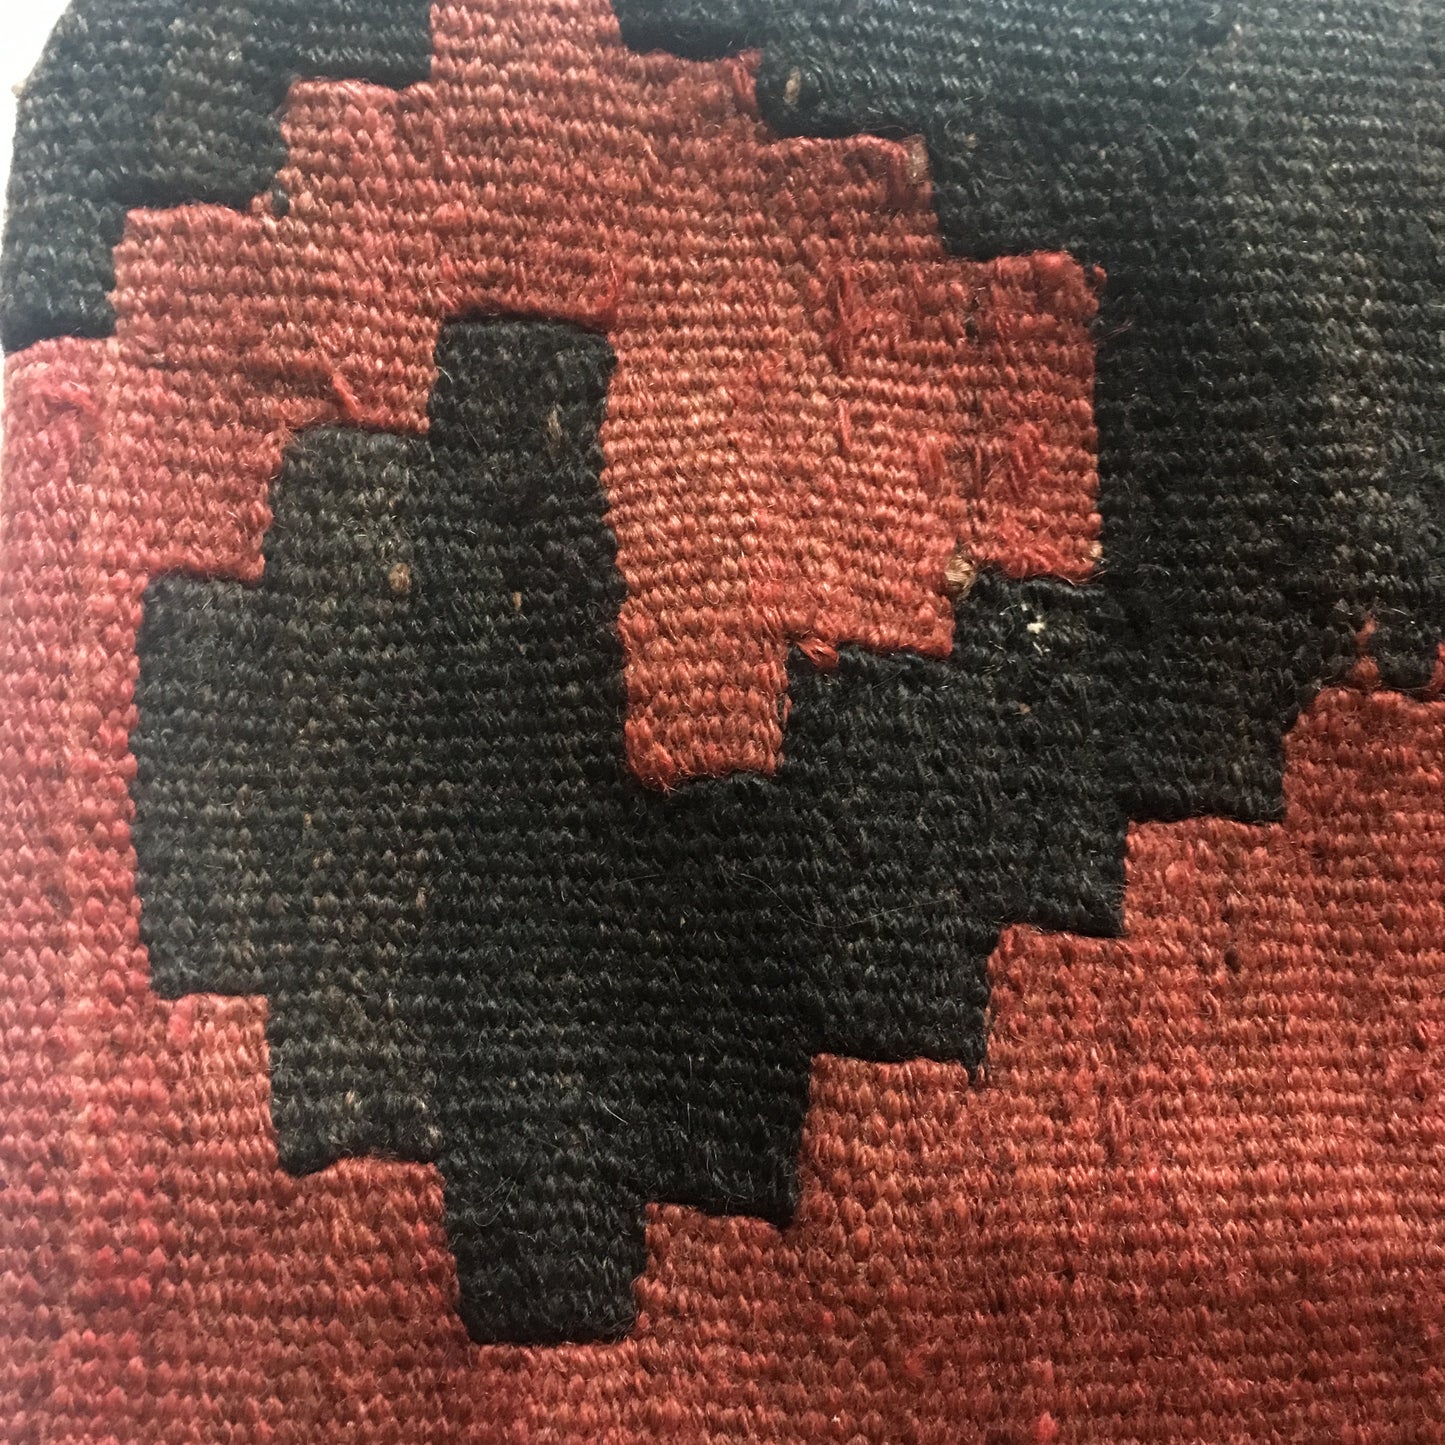 Vintage Kilim Pillow - steps pattern